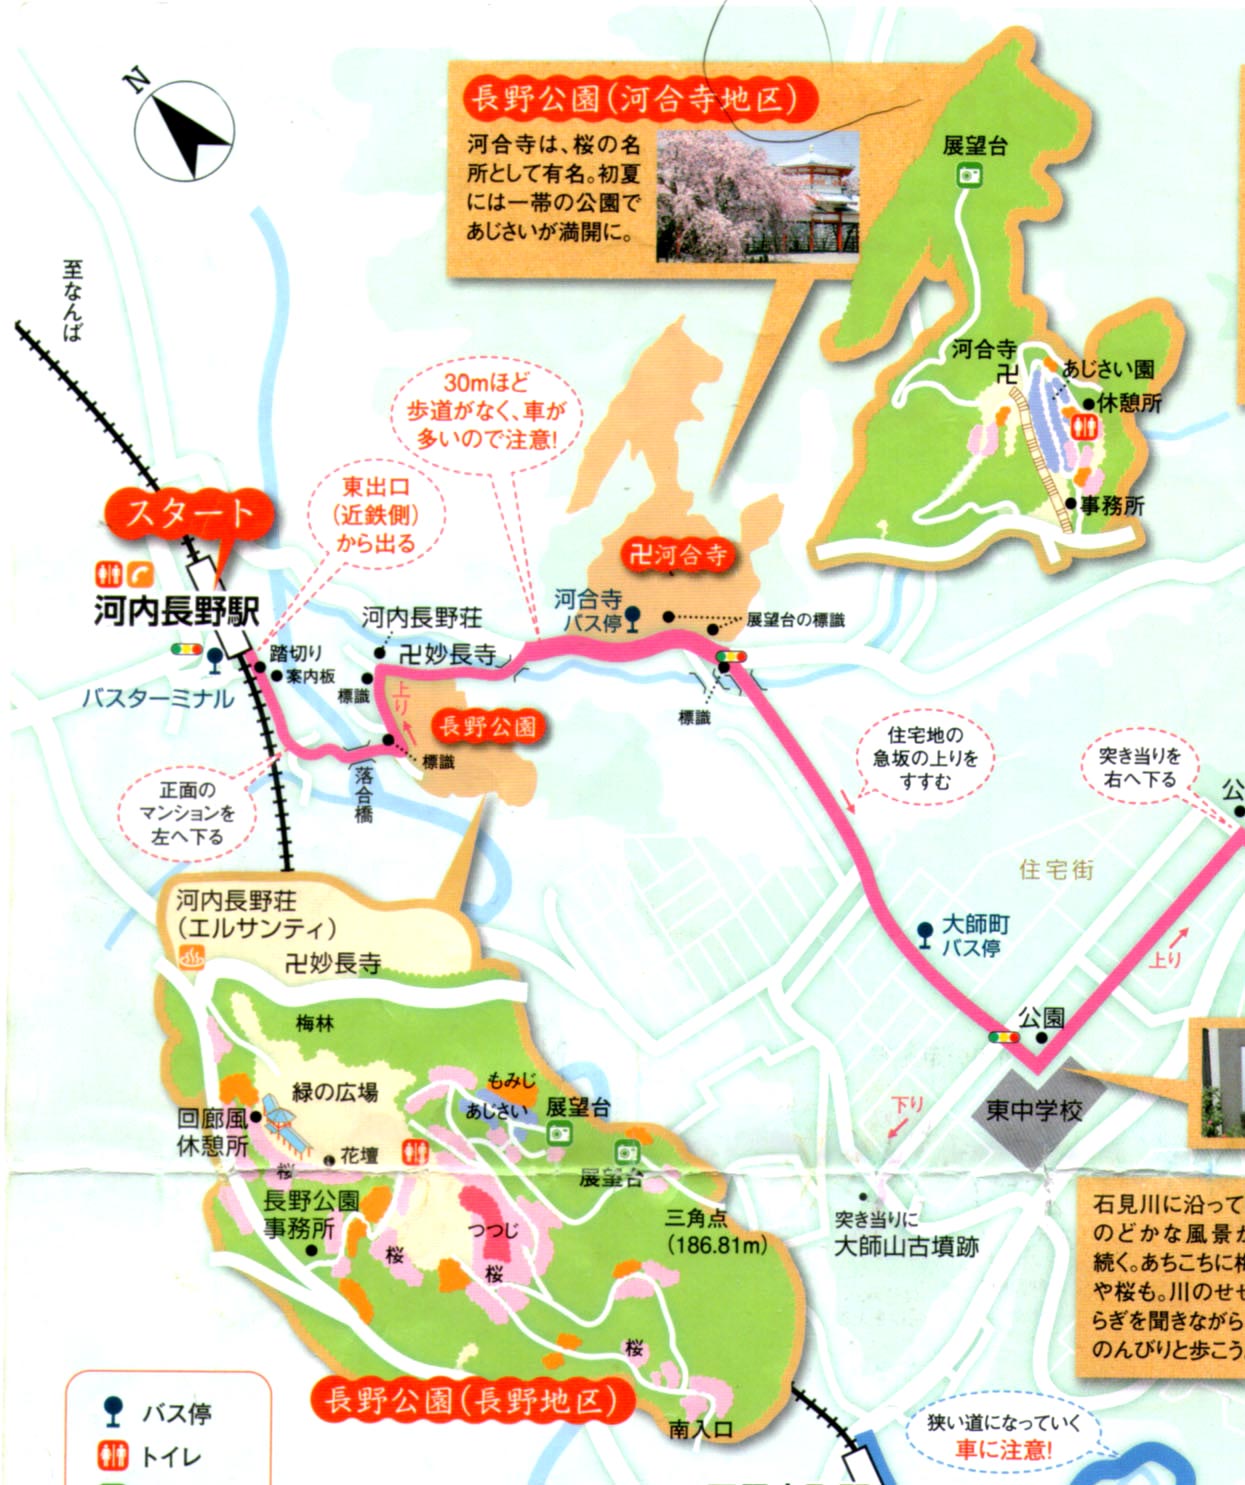 河内長野駅近くの長野公園 河合寺へ 大阪を歩こう